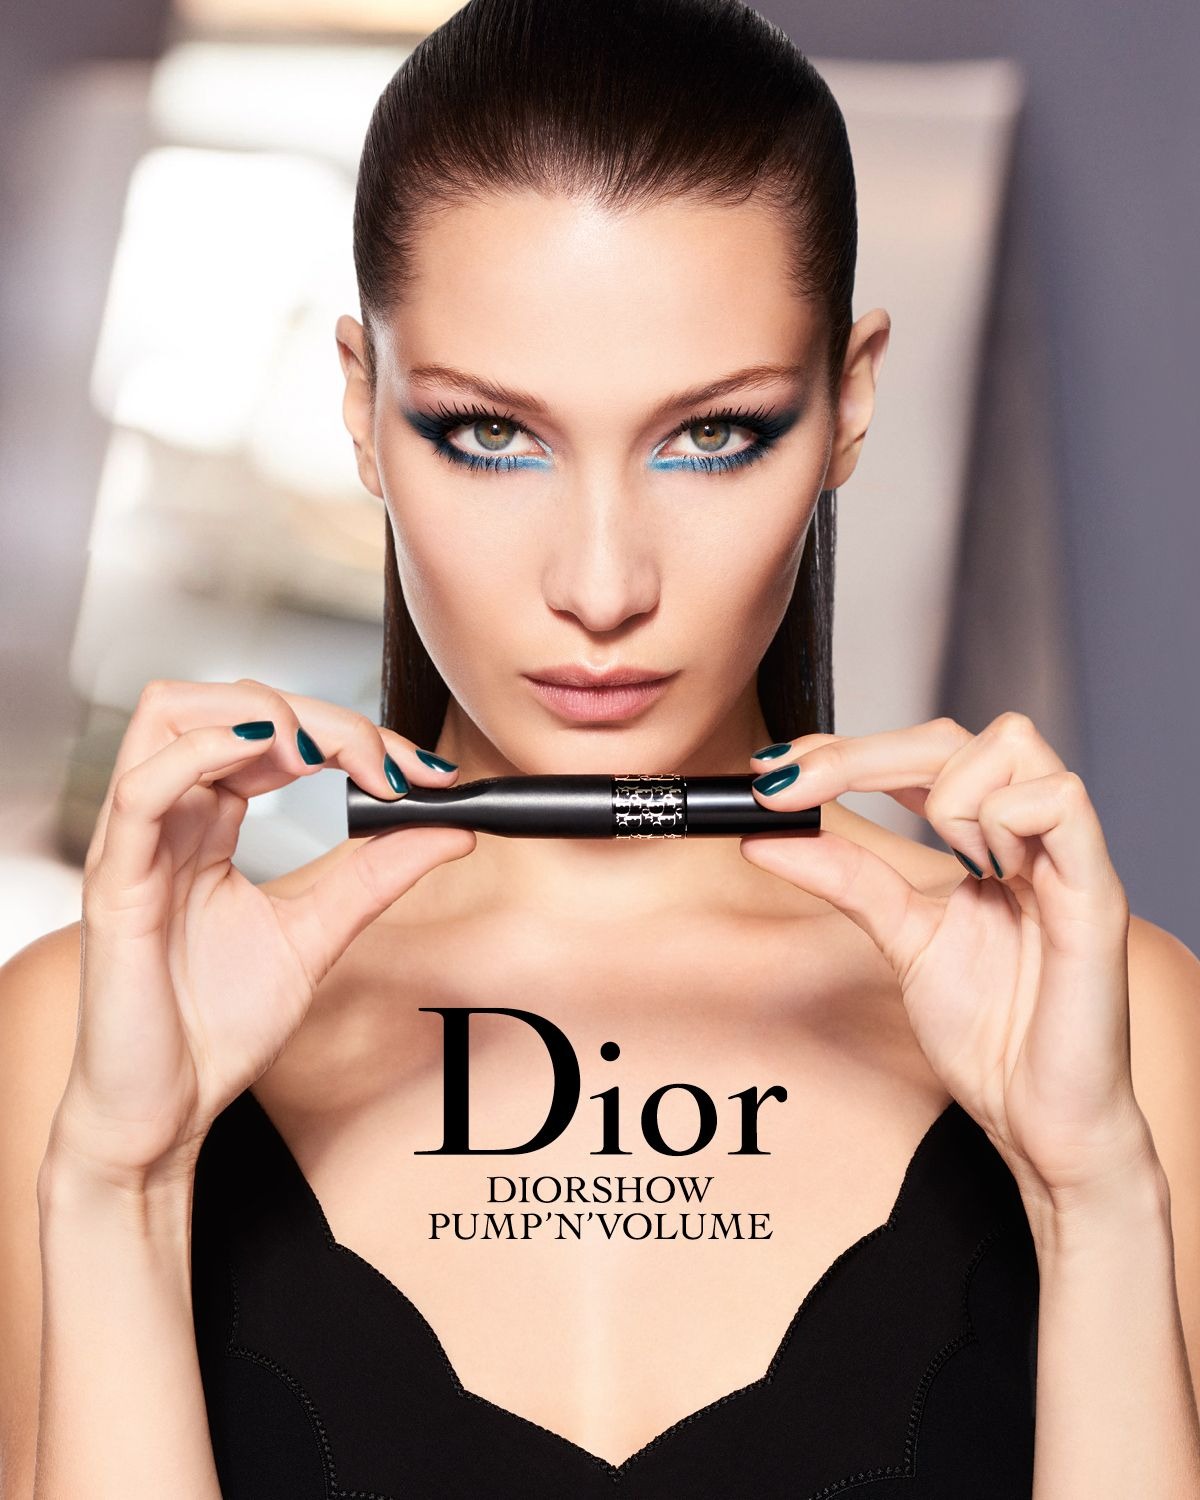 Bella Hadid Dior Endorsement